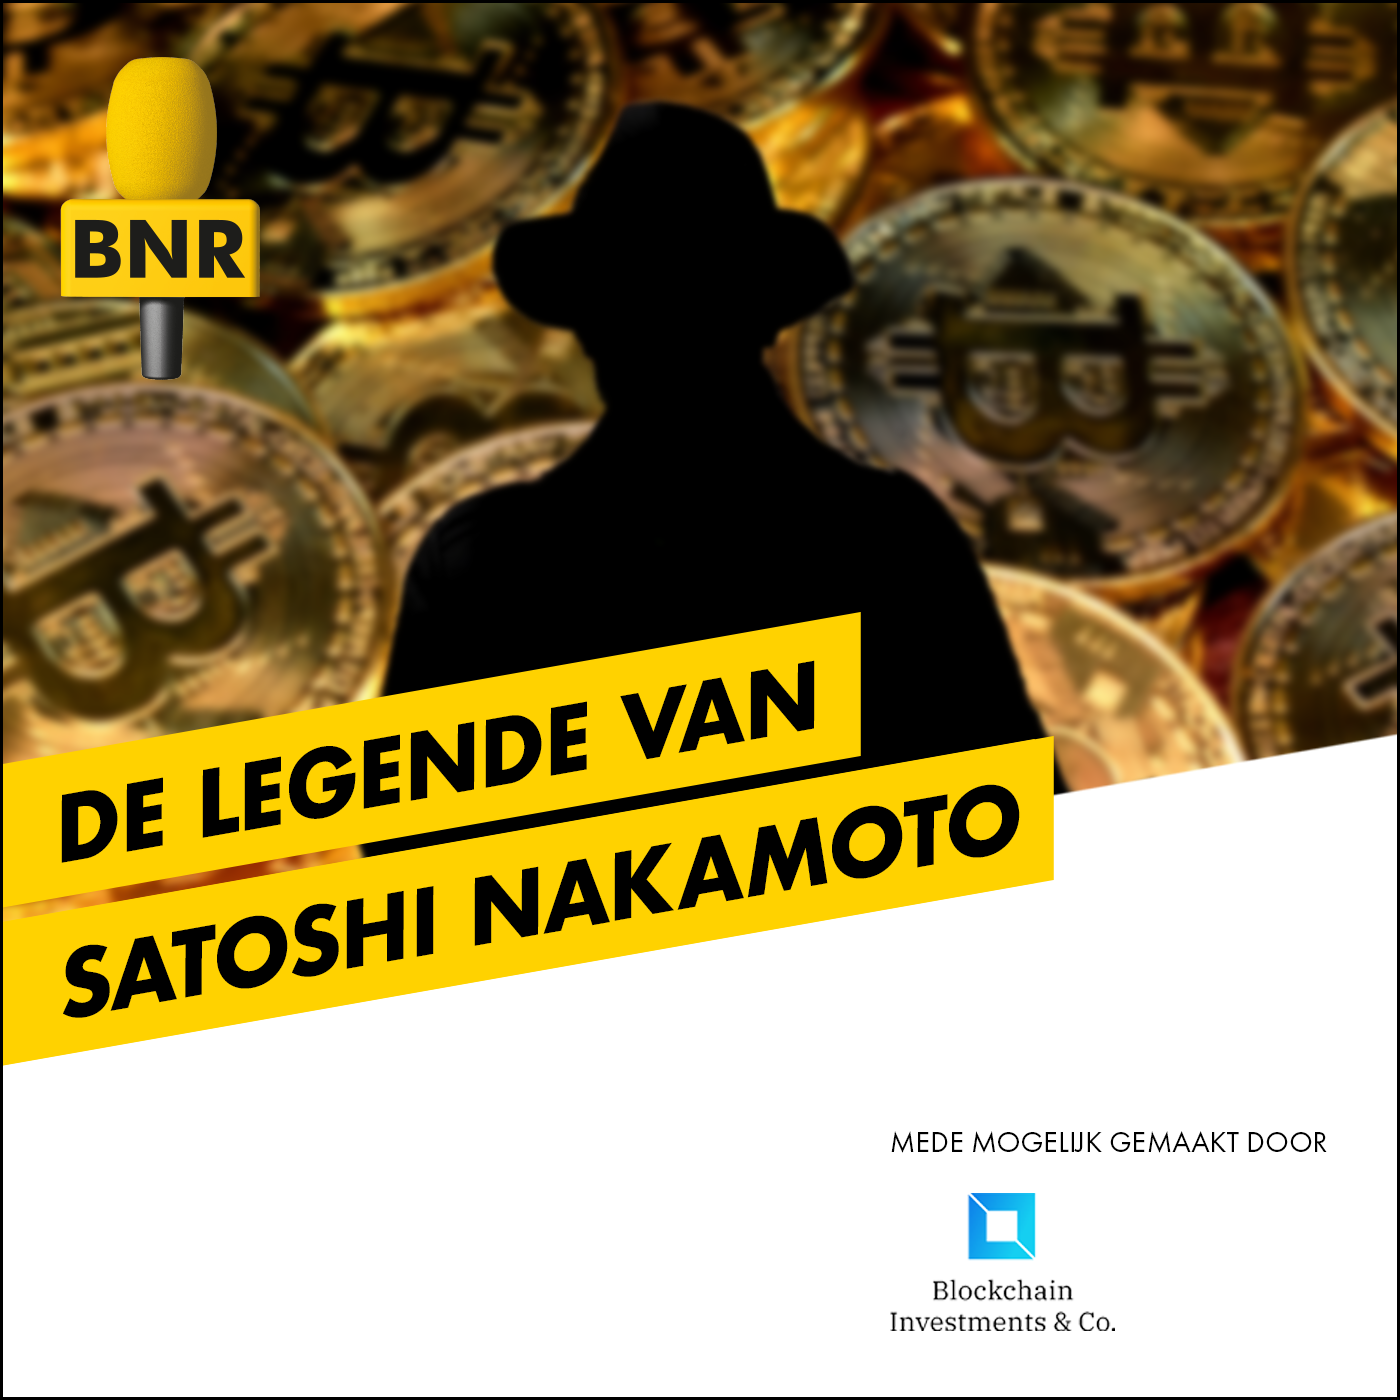 De Legende van Satoshi Nakamoto